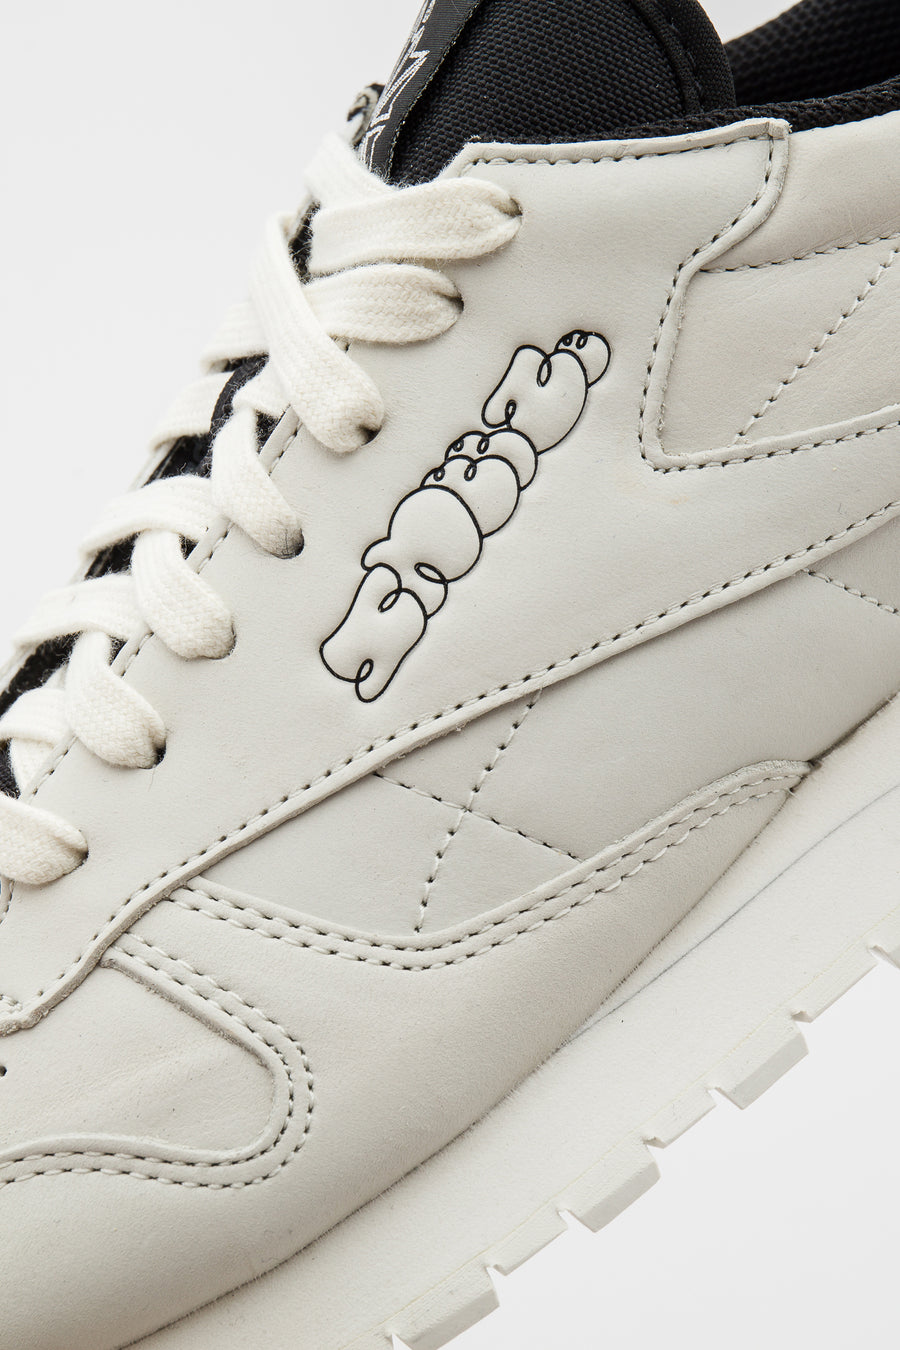 Reebok - Men\'s SNEEZE Classic Leather Sneaker in White/Chalk/Core Black